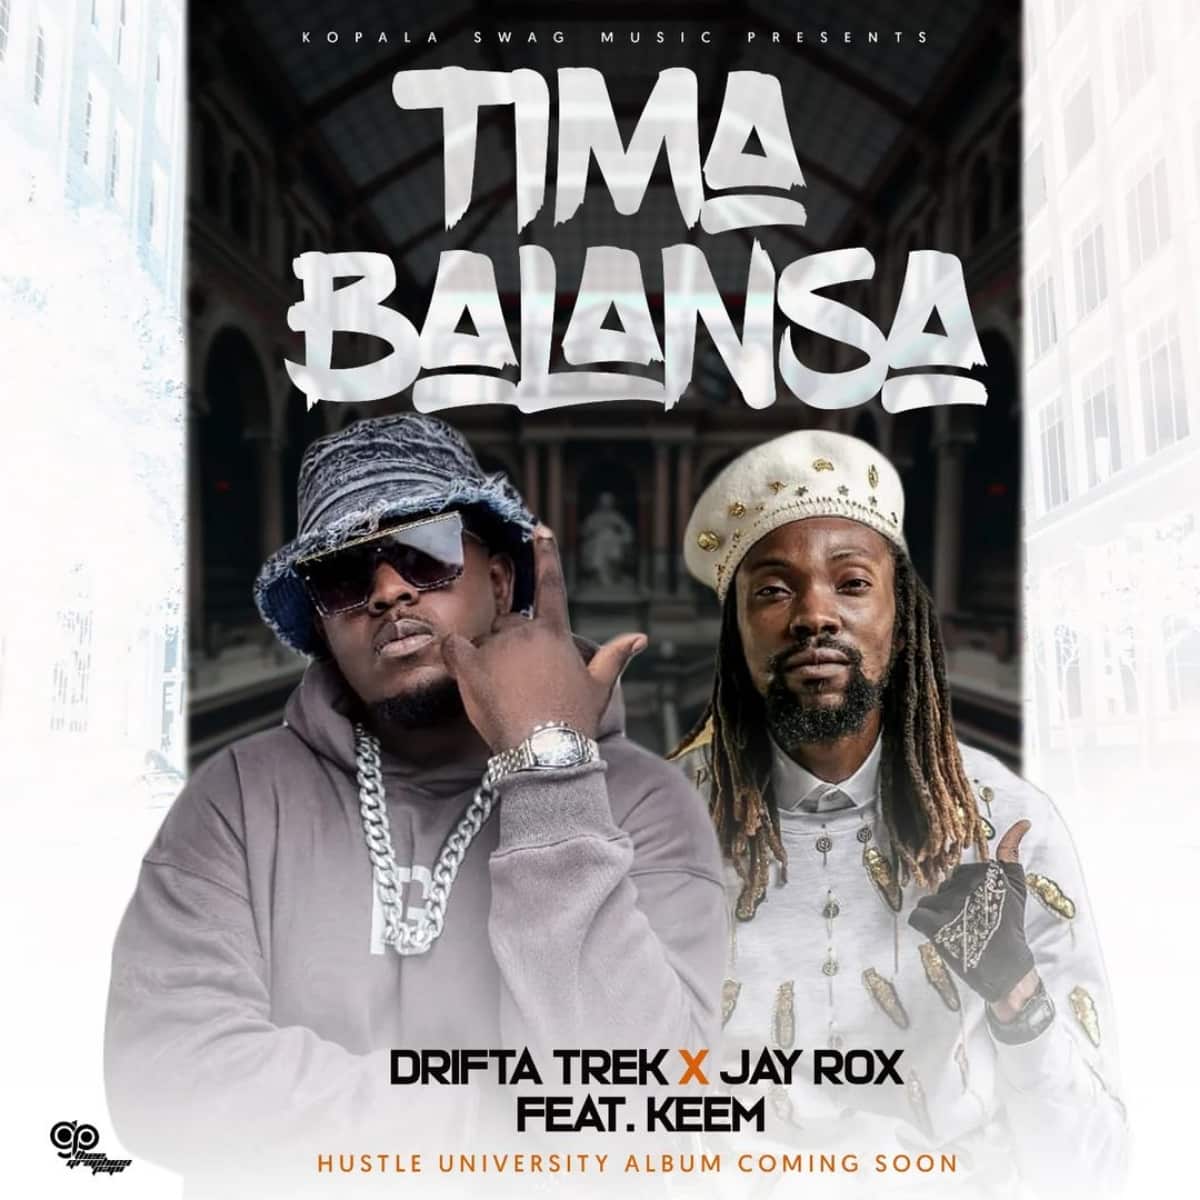 DOWNLOAD: Drifta Trek Ft Jay Rox & Keem – “Tima Balansa” Mp3